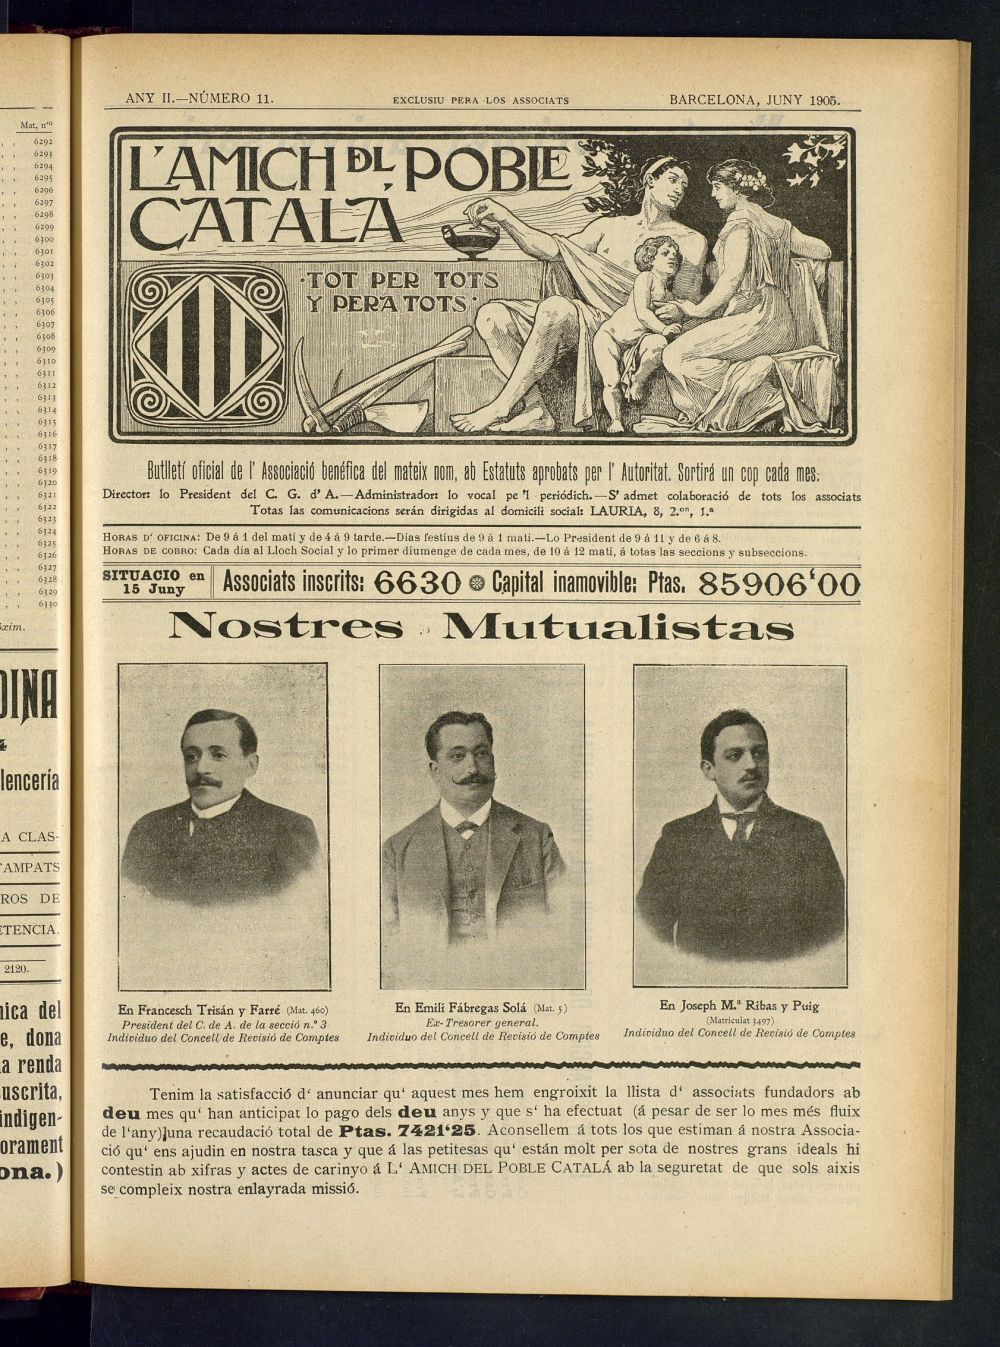 Lamich del poble catal: butllet oficial de lassociacio, ques publicara una volta cada mes de juny de 1905